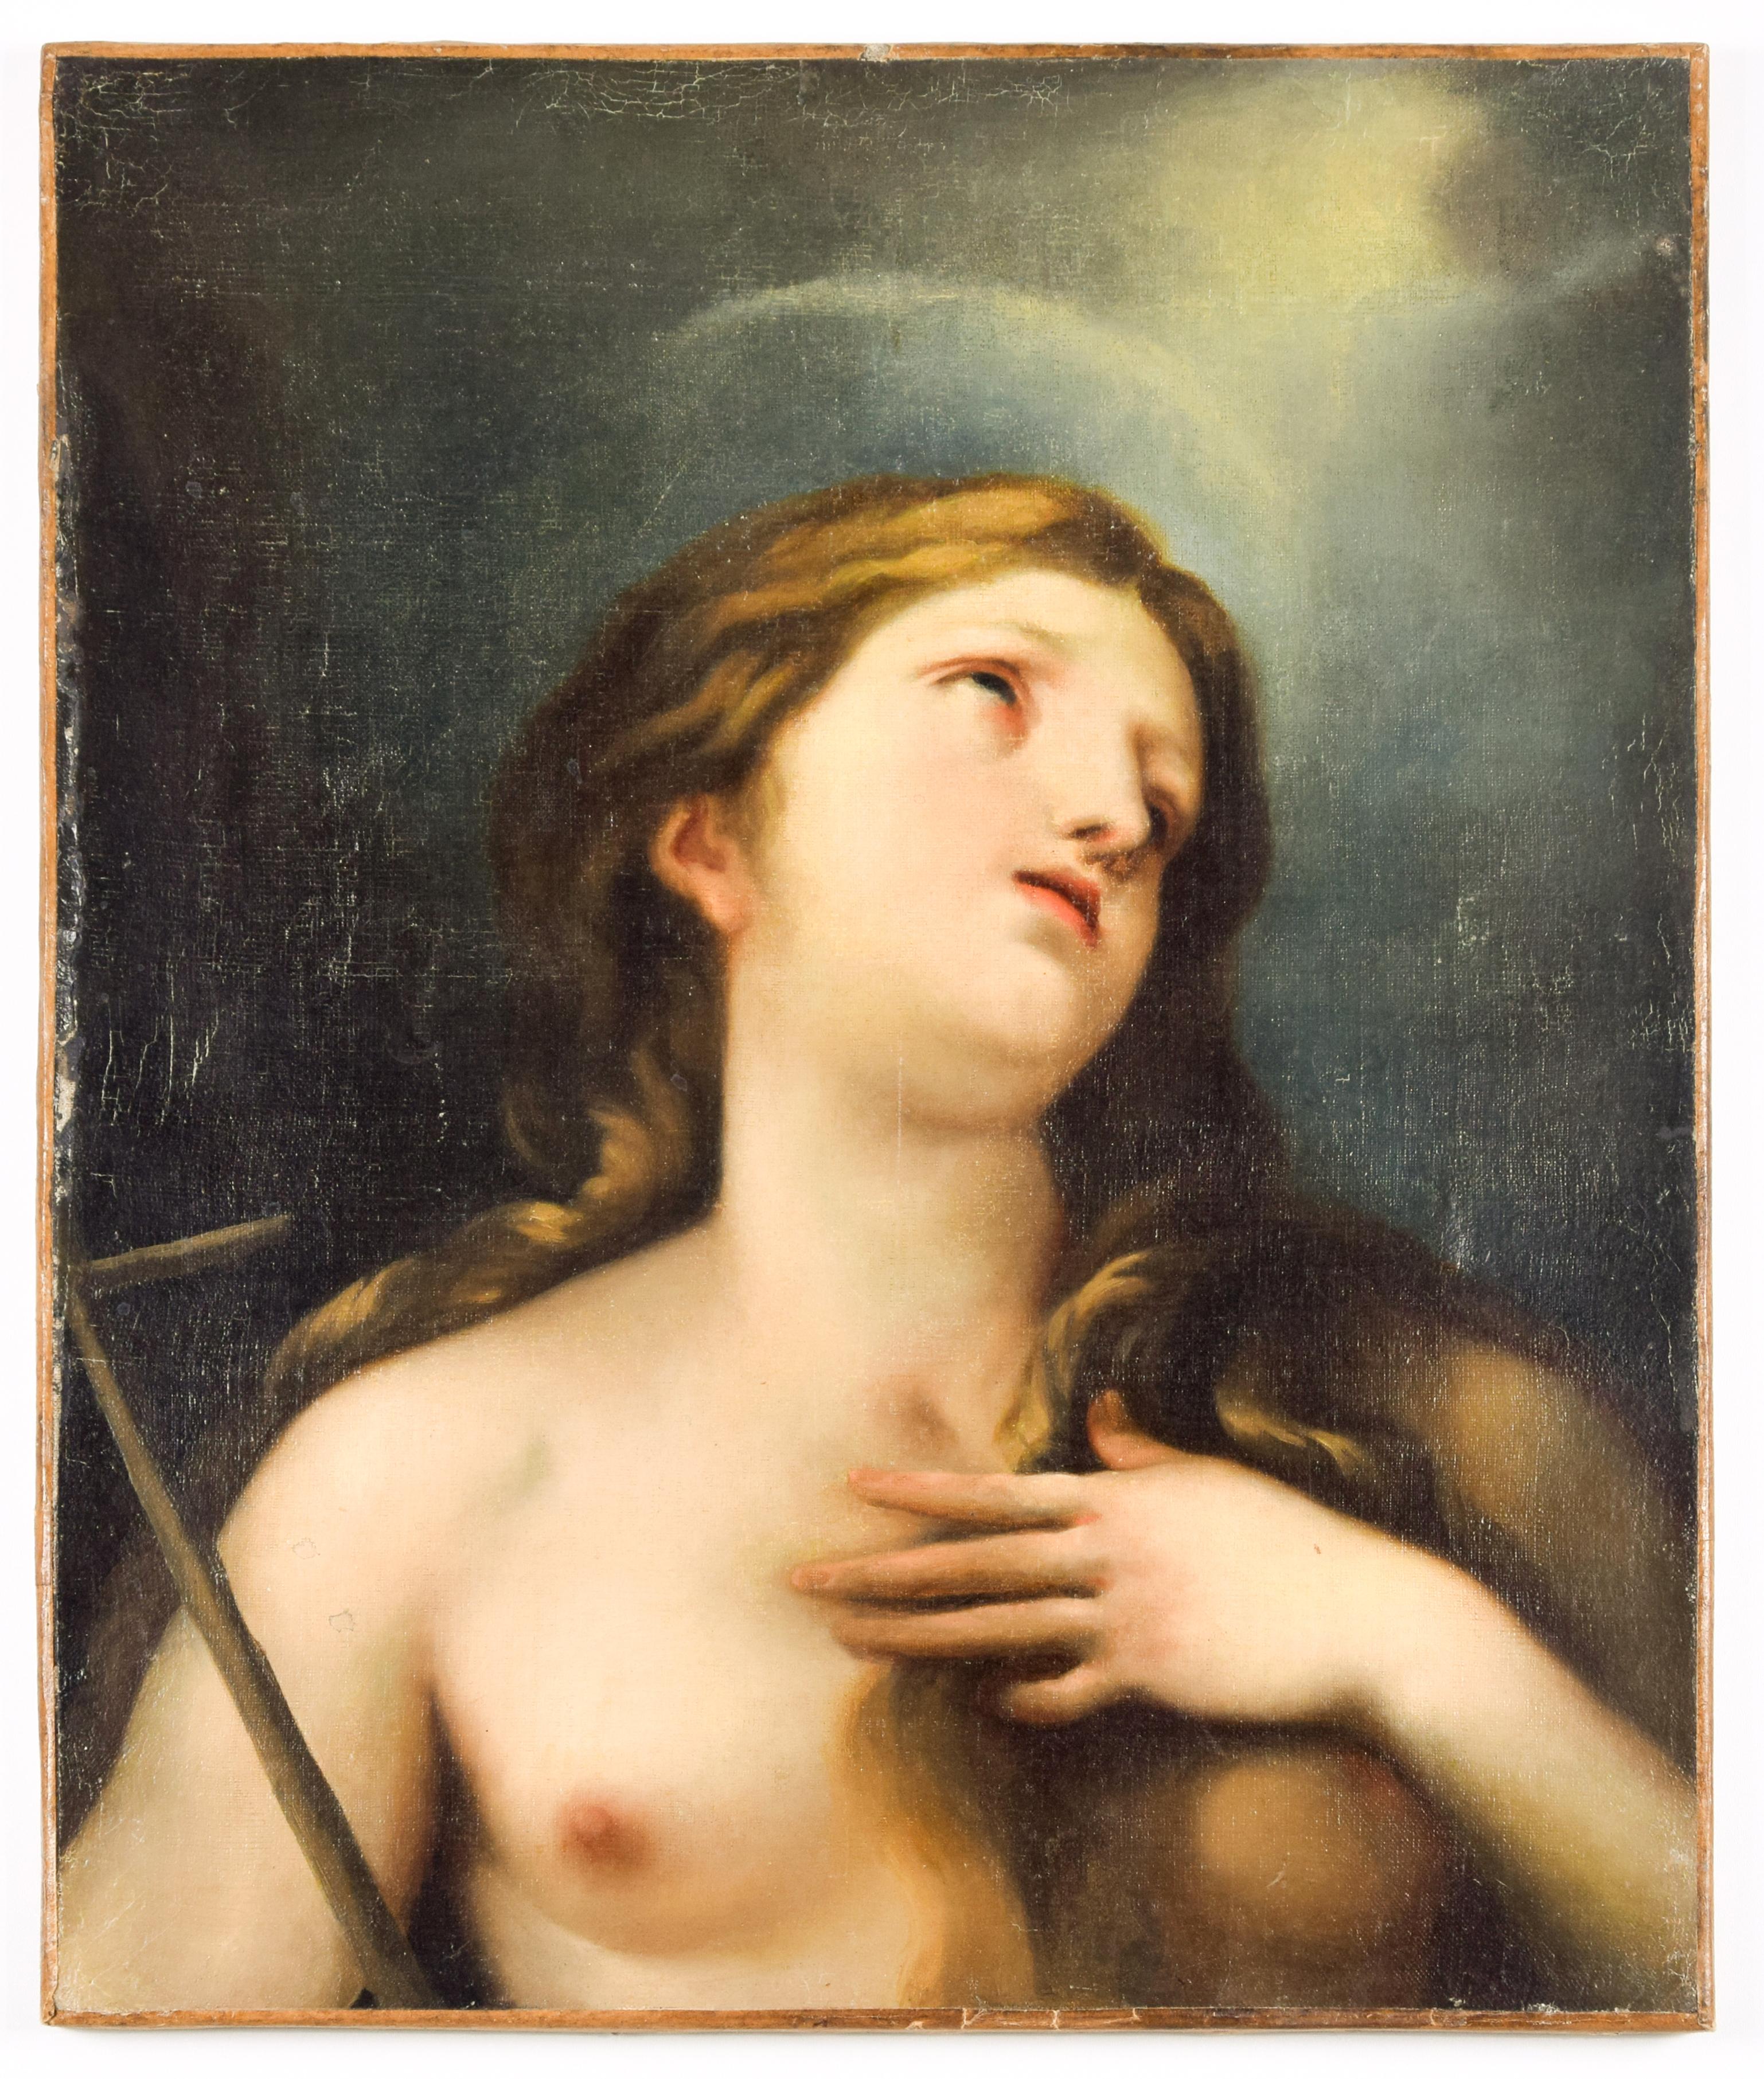 Unknown Figurative Painting – Mary Magdalene – Öl auf Leinwand von der italienischen Schule des 19. Jahrhunderts.